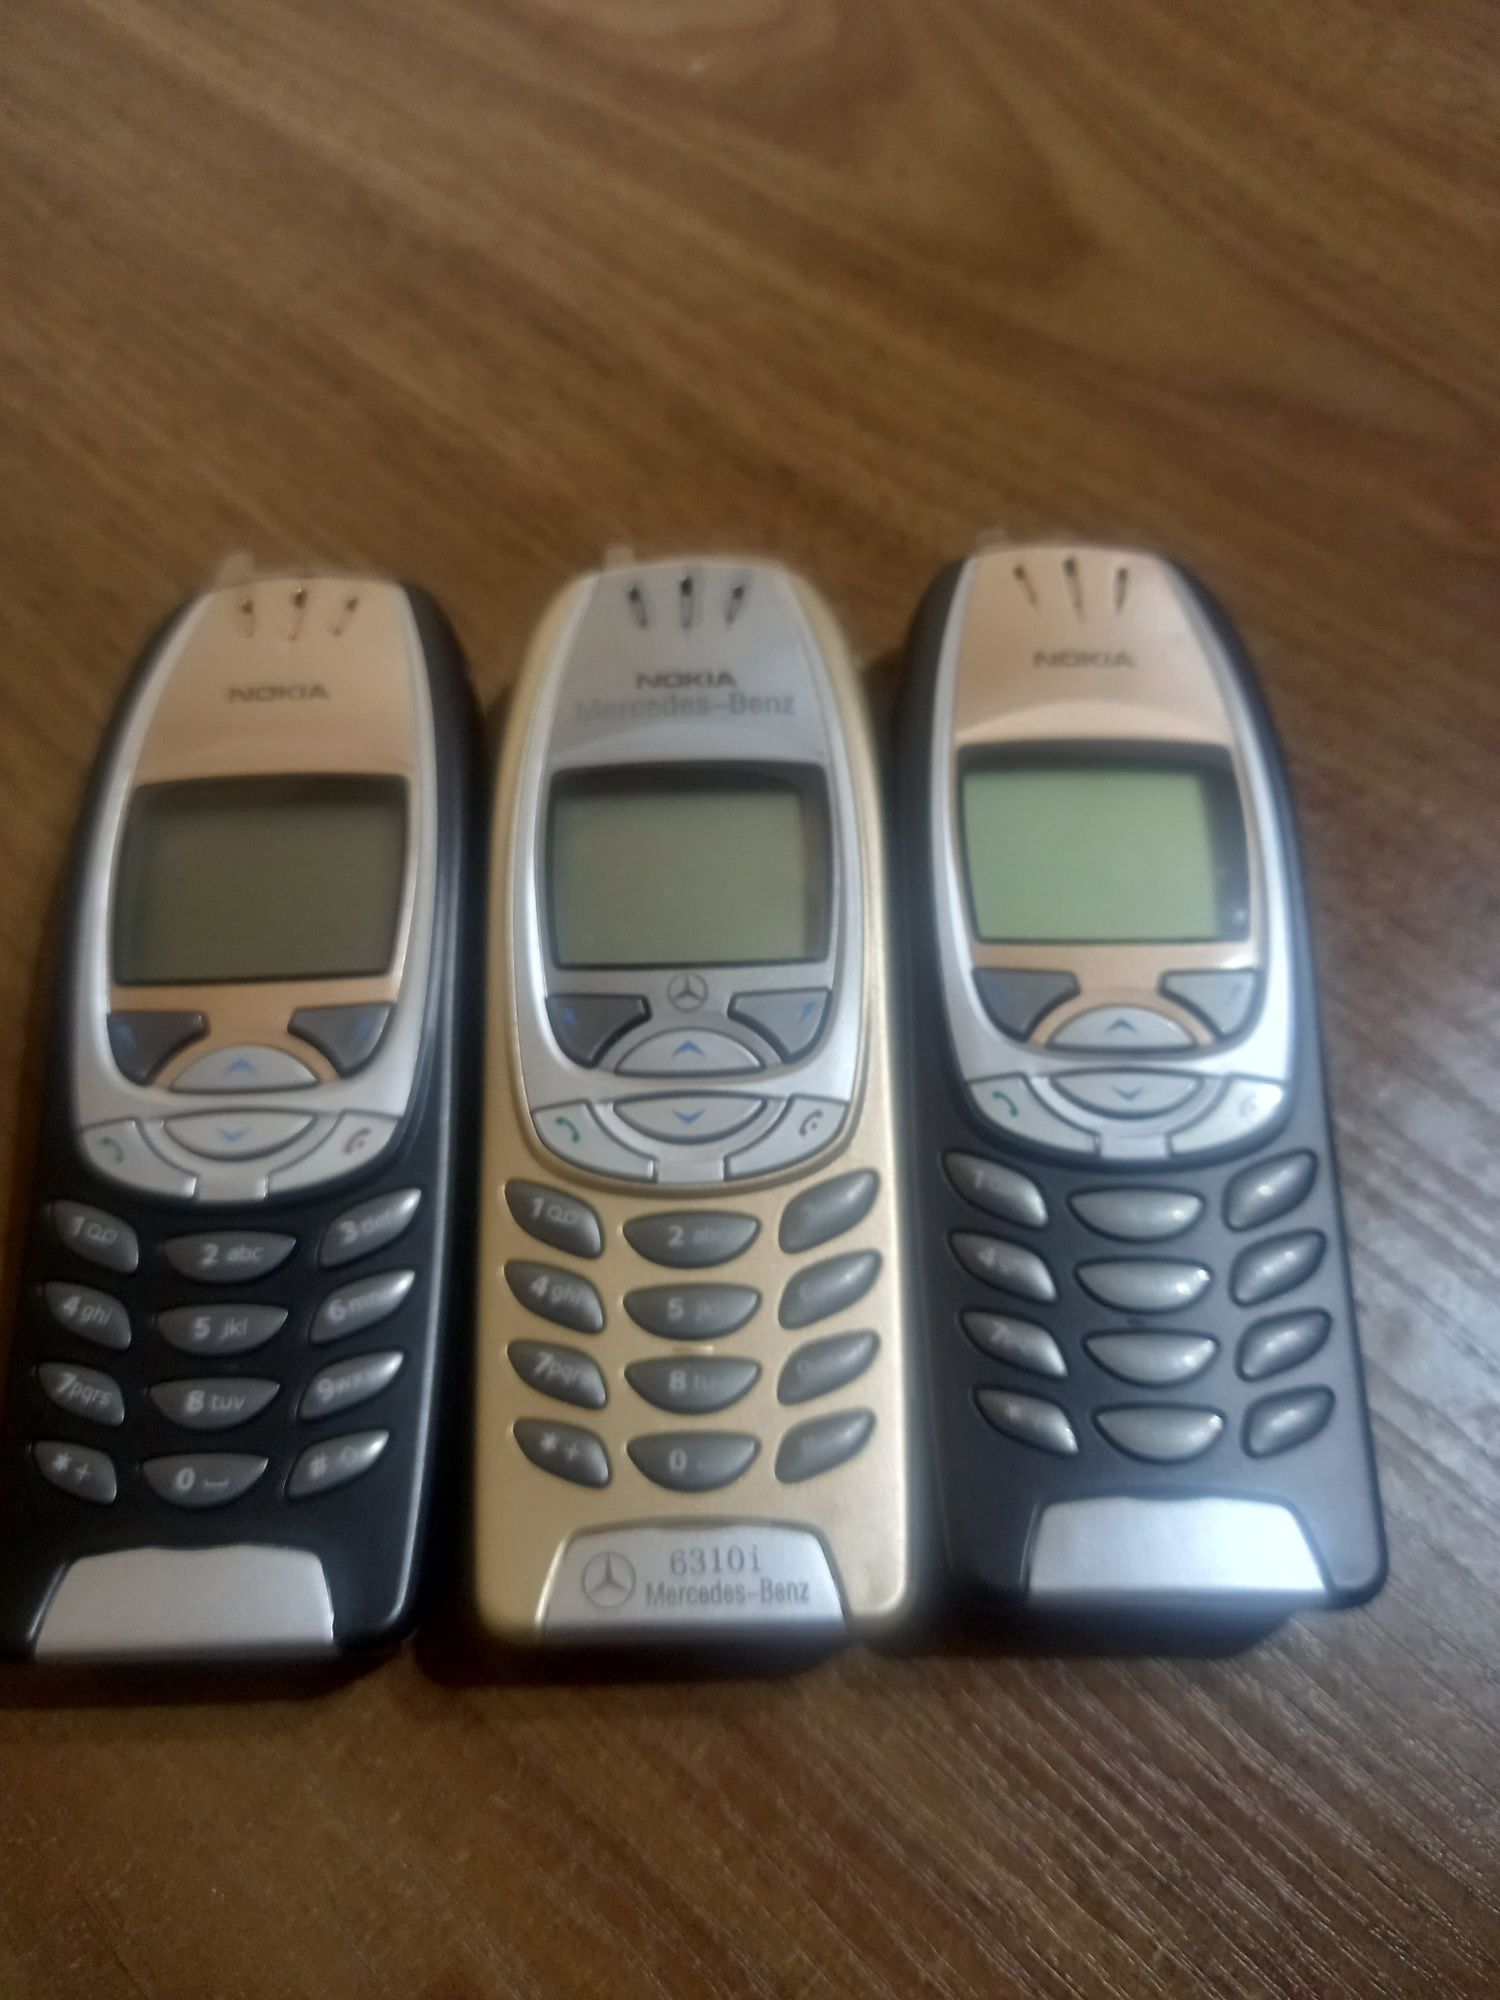 Телефони Nokia 6310 и 6310 i